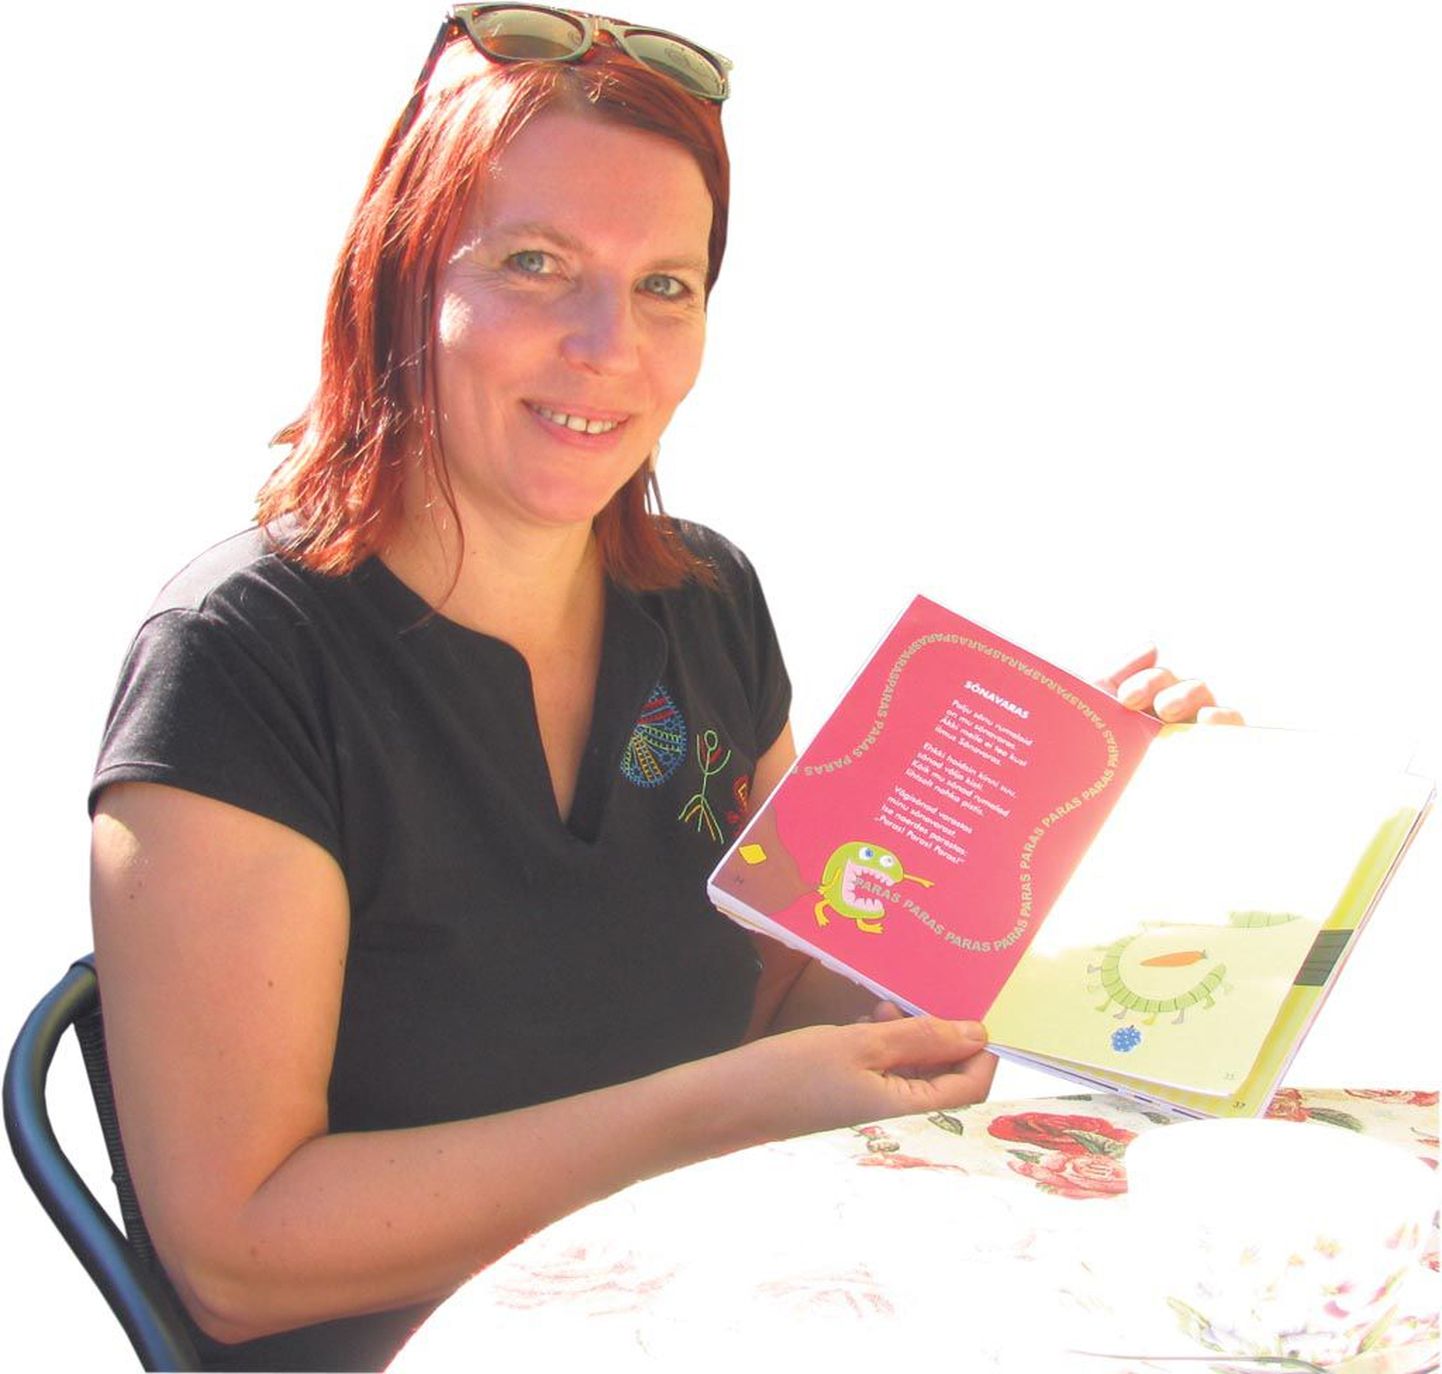 Helle Kirsi hoiab käes oma uue raamatu maketti ja loodab, et lasteluulekogu jõuab varsti lugejateni.